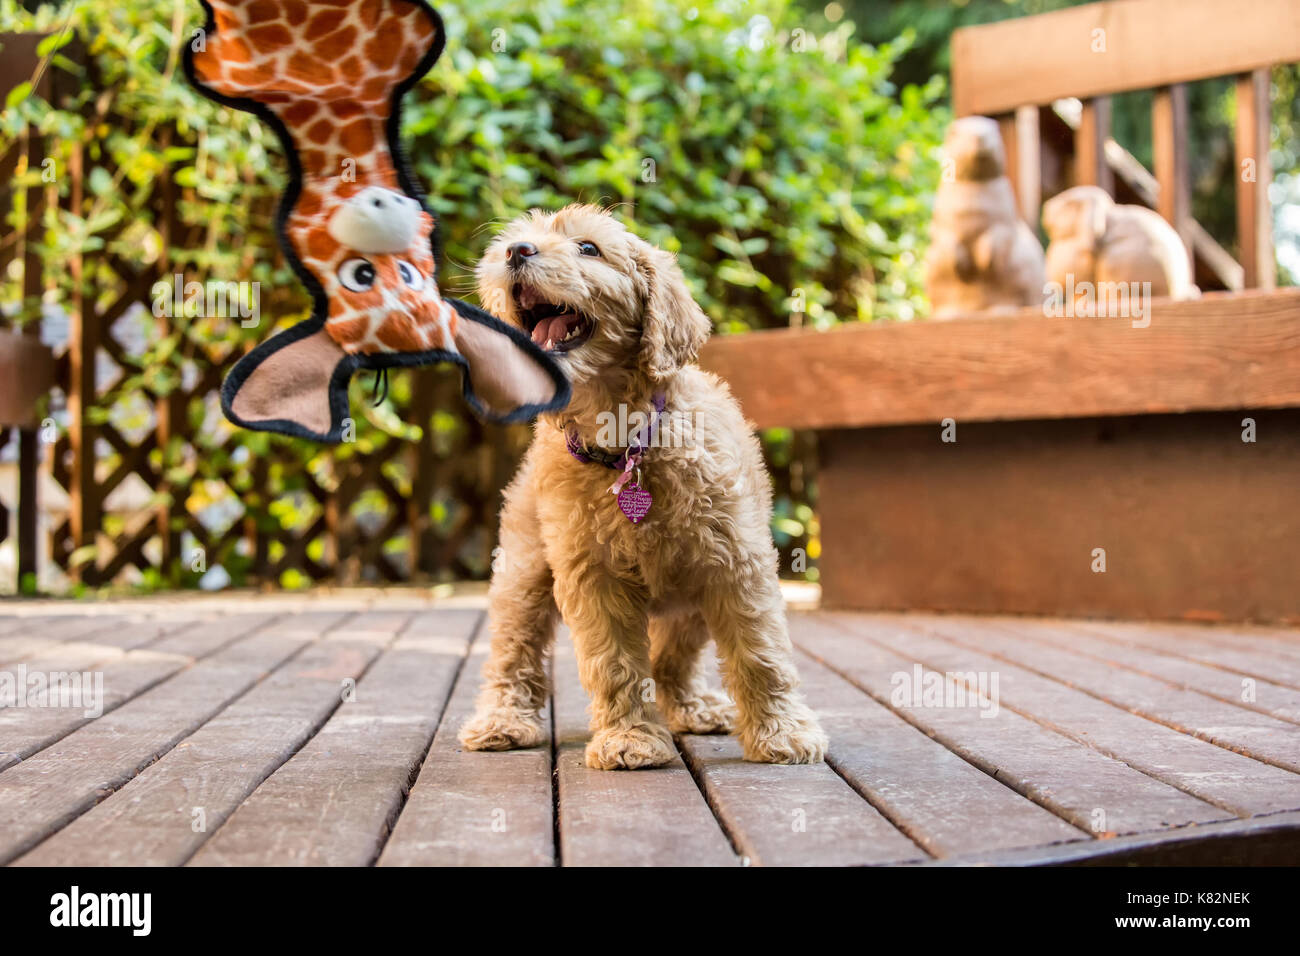 Otto settimane vecchio cucciolo Goldendoodle 'Bella' cercando di ottenere la sua giraffa giocattolo che è dangled davanti a lei, Issaquah, Washington, Stati Uniti d'America Foto Stock